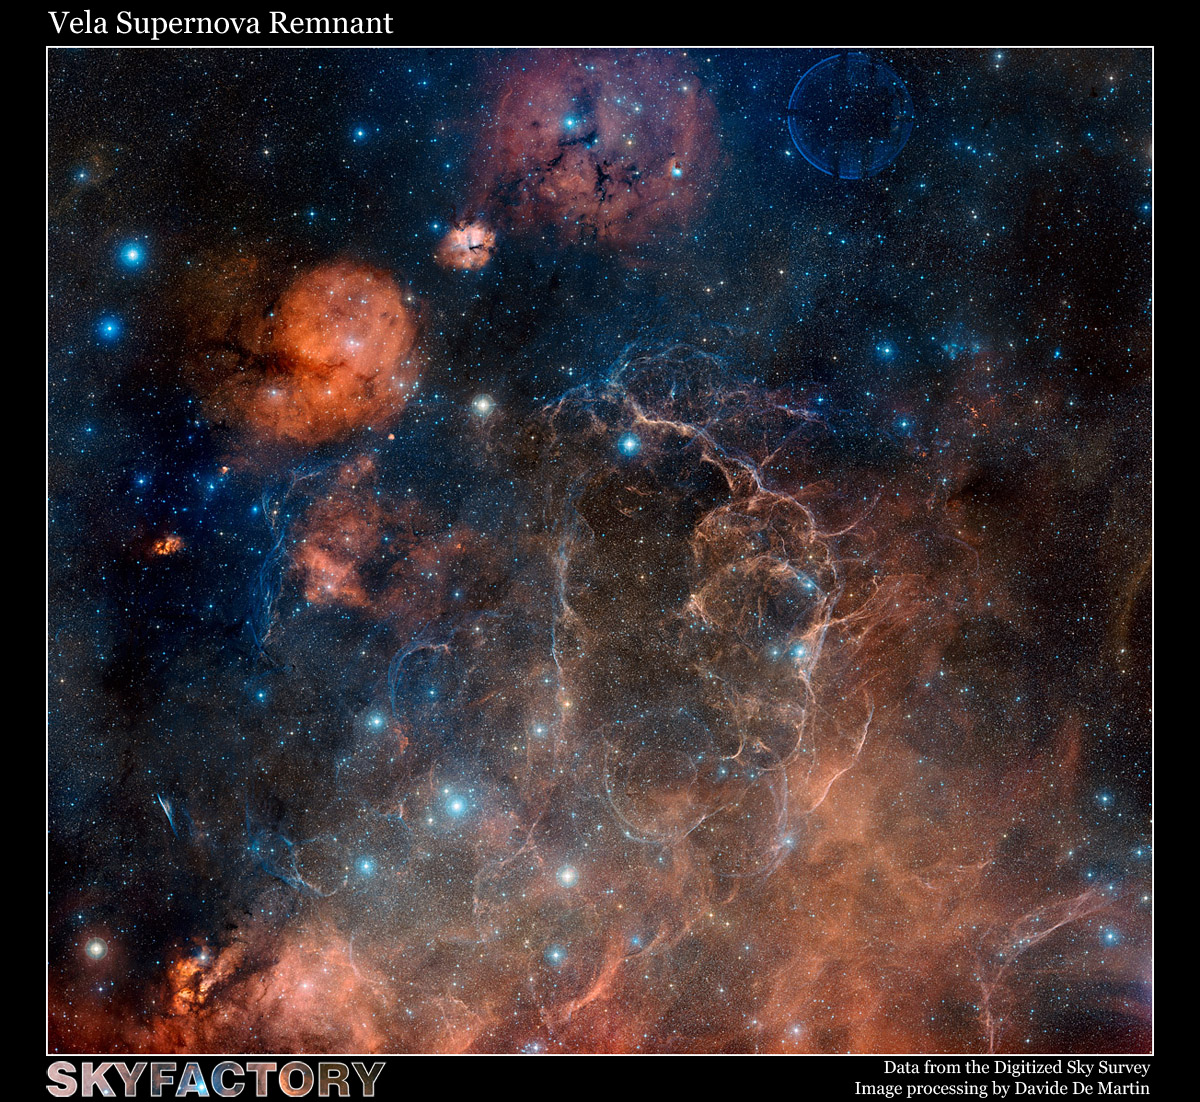 Vela Supernova Remnant in Visible Light